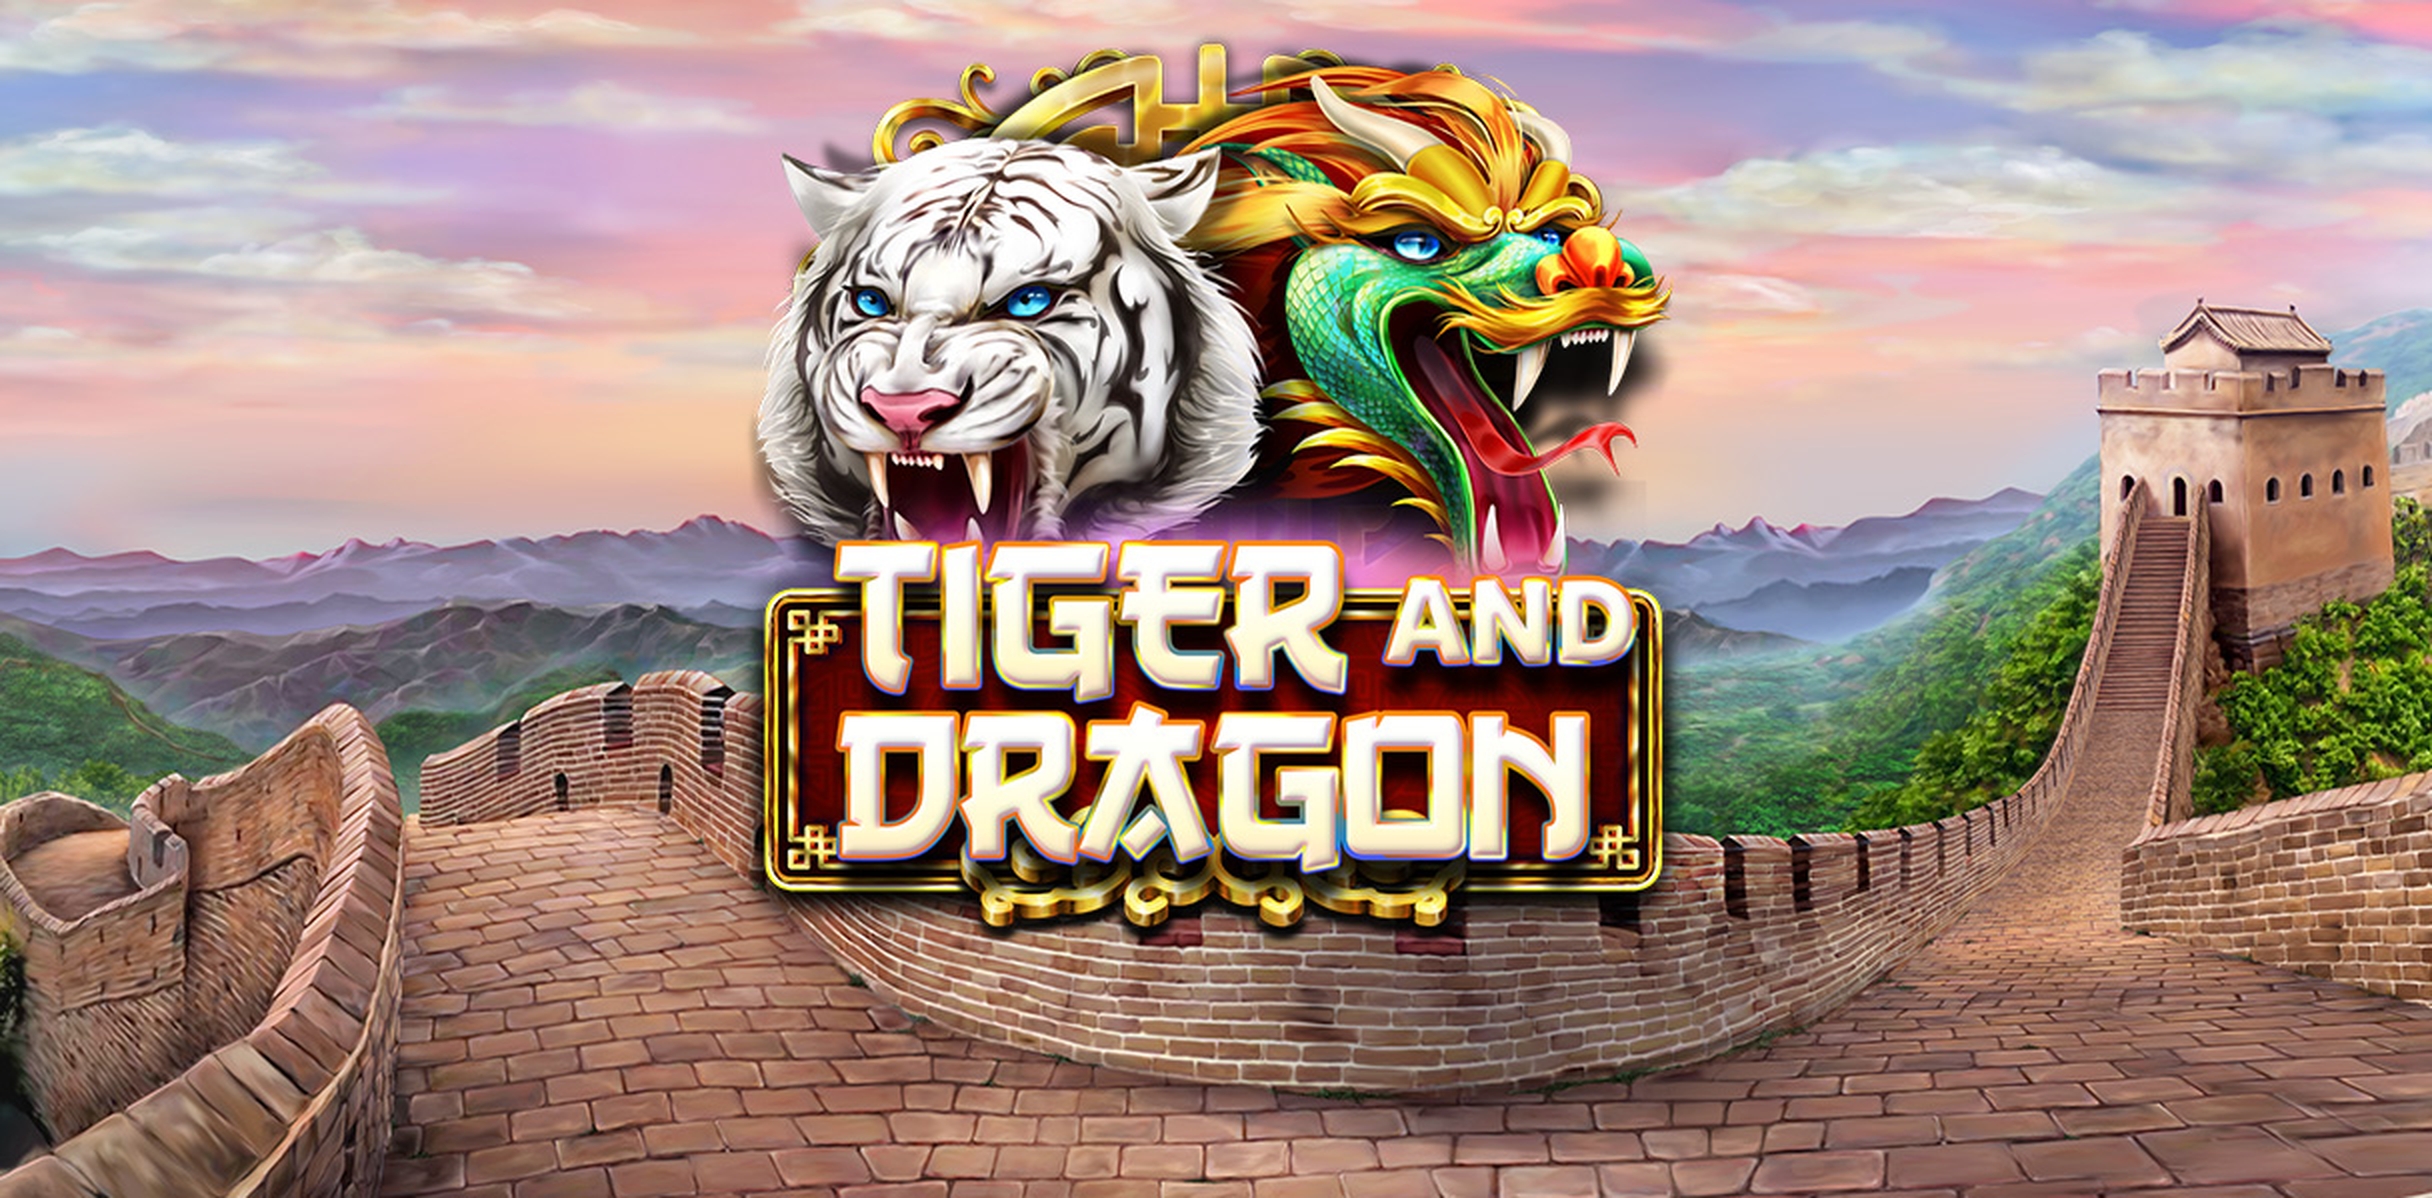 Tiger and Dragon demo